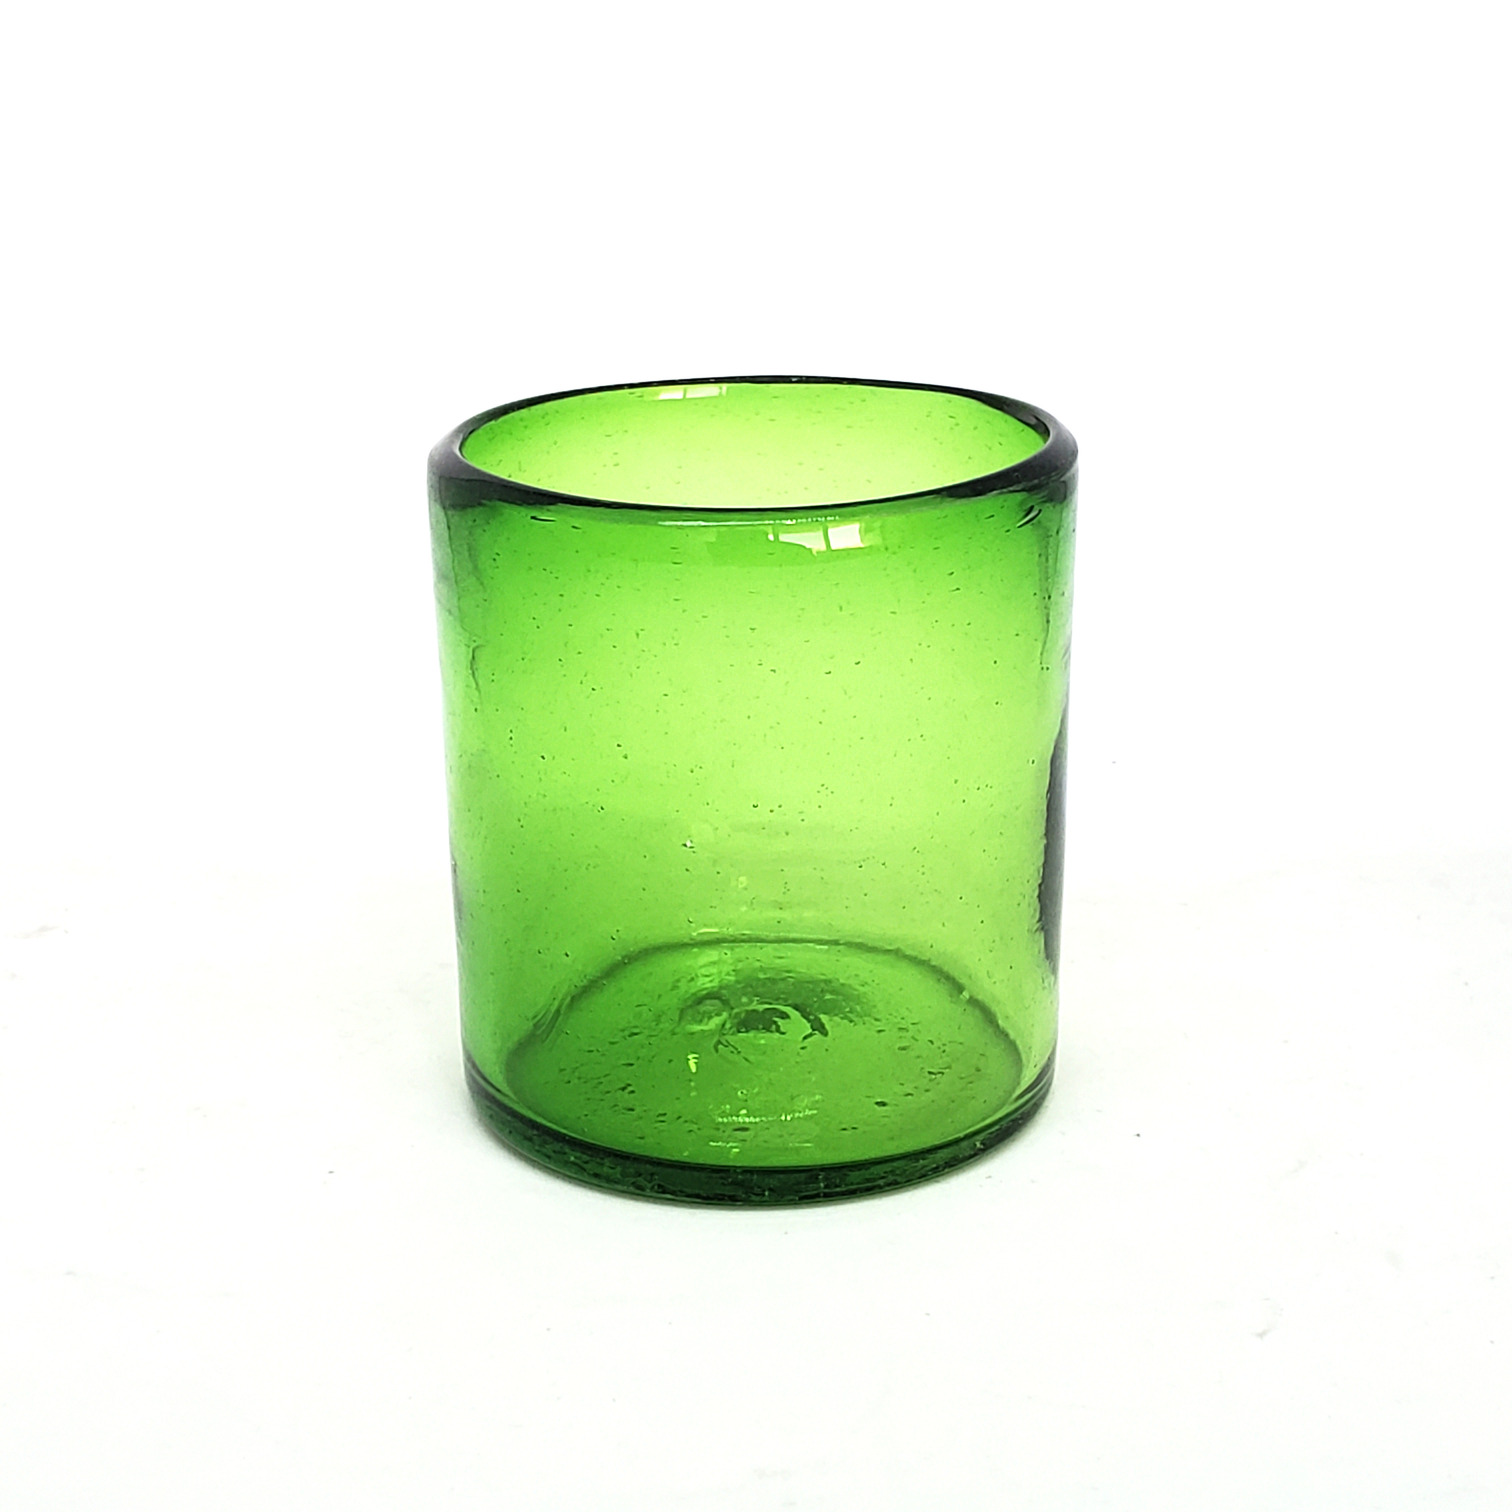 Colores Solidos al Mayoreo / s 9 oz color Verde Esmeralda Sólido (set de 6) / Éstos artesanales vasos le darán un toque colorido a su bebida favorita.